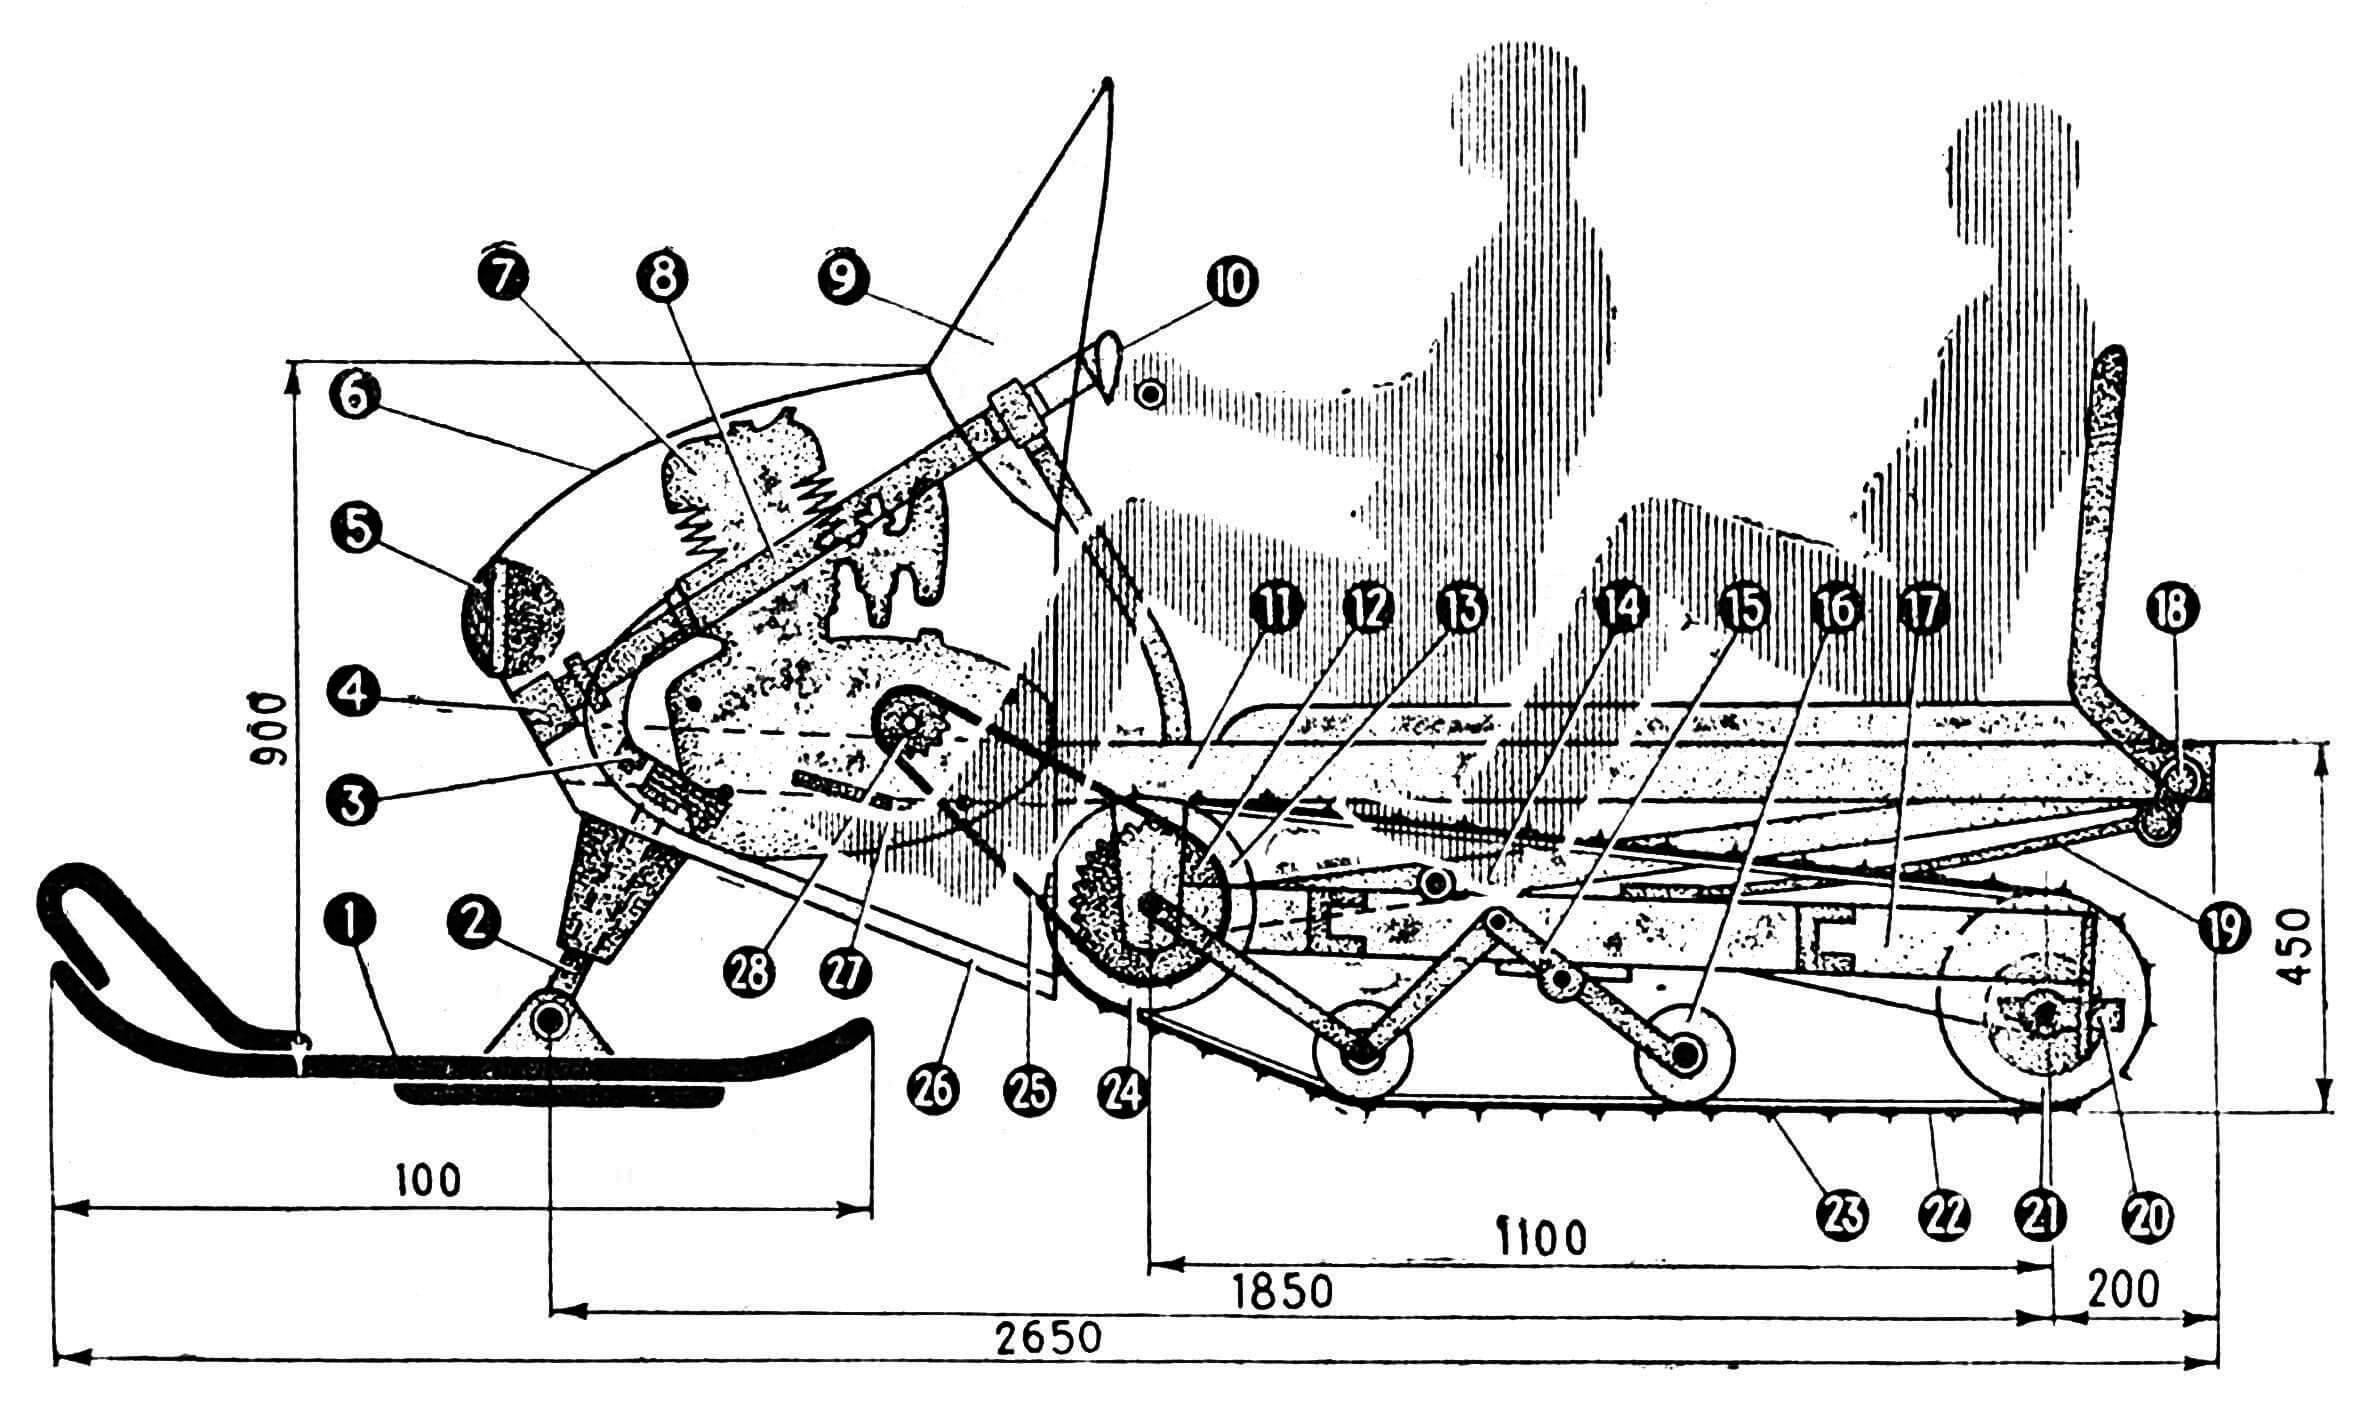 Рис. 1. Типовая схема мотонарт с передним расположением двигателя: 1 — управляемая лыжа, 2 — поворотная колонка, 3 — рулевая тяга, 4 — подпятник рулевой колонки, 5 — фара, 6 — передний обтекатель, 7 — двигатель, 8 — рулевая колонка, 9 — ветровое стекло, 10 — руль, 11 — рама корпуса, 12 — ведомая звездочка, 13 — опорное колесо, 14 — ось опорных катков, 15 — кронштейн катков, 16 — каток, 17 — каретка движителя, 18 — звено рессоры, 19 — рессора, 20 — натяжной механизм, 21 — опорнонатяжной каток, 22 — транспортерная лента, 23 — снегозацепы, 24 — опорное колесо, 25 — цепь, 26 — снегоотбойник, 27 — педаль переключения передач, 28 — ведущая звездочка.